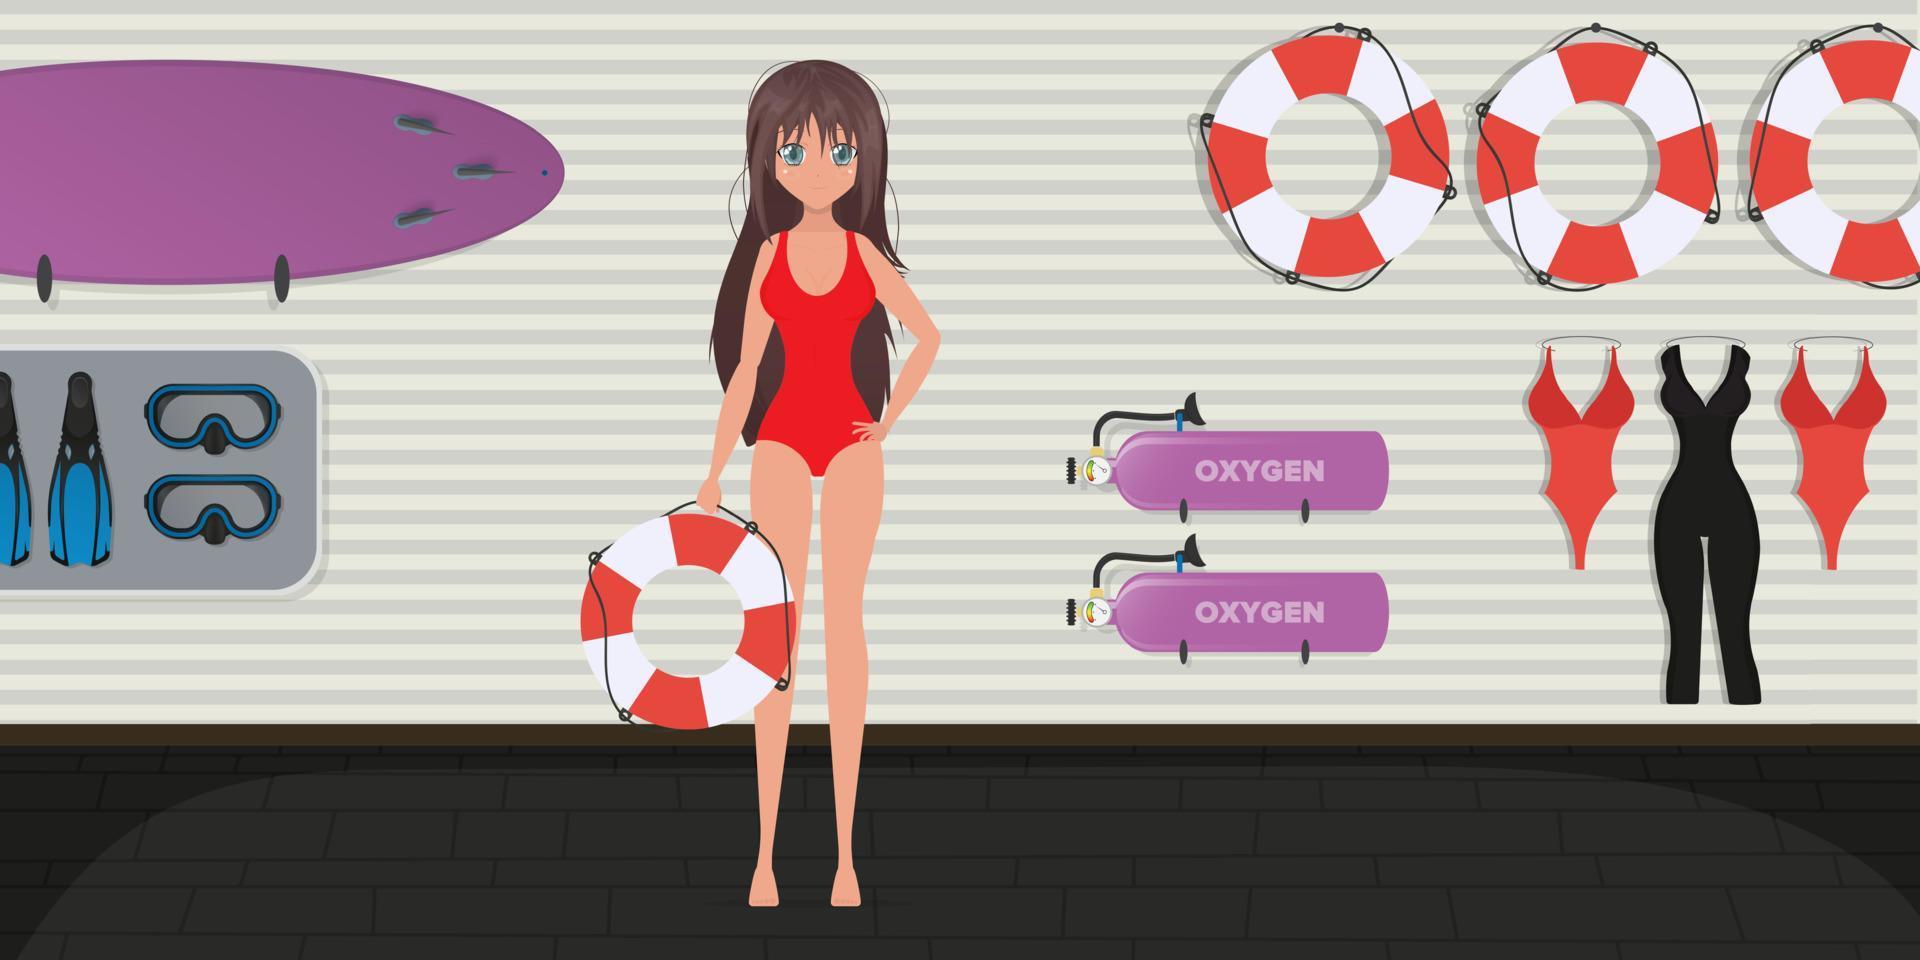 puesto de salvamento en la playa. una salvavidas con traje de baño rojo sostiene un aro salvavidas en sus manos. estilo de dibujos animados, ilustración vectorial. vector